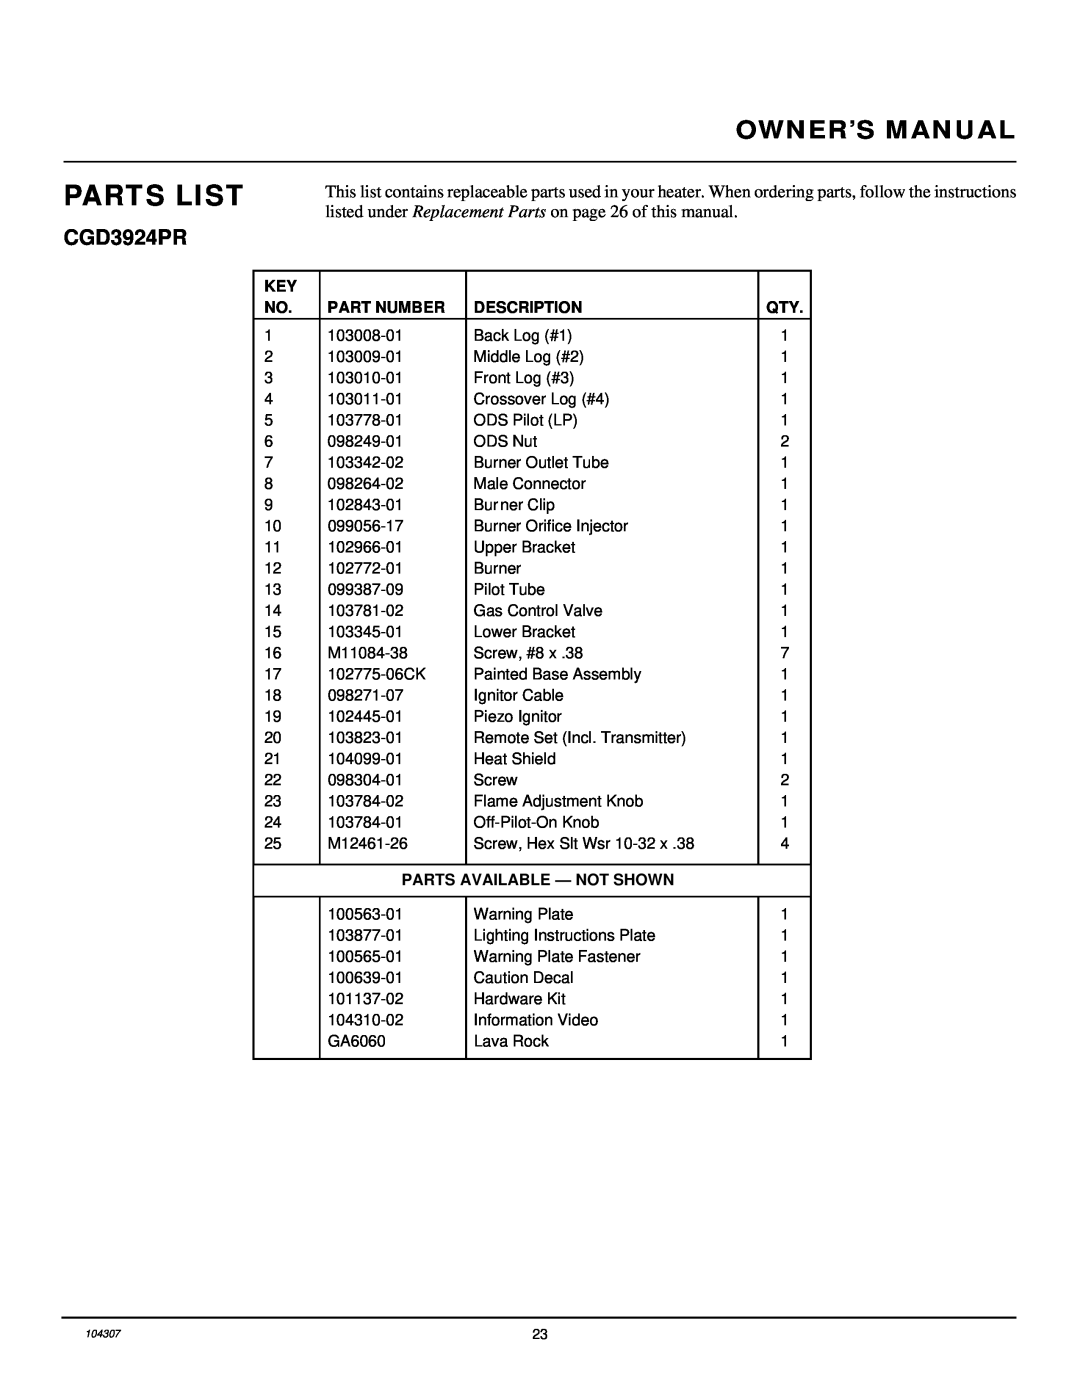 Desa CGB3930PR, CGB3924PR Parts List, Owner’S Manual, CGD3924PR, Part Number, Description, Parts Available - Not Shown 